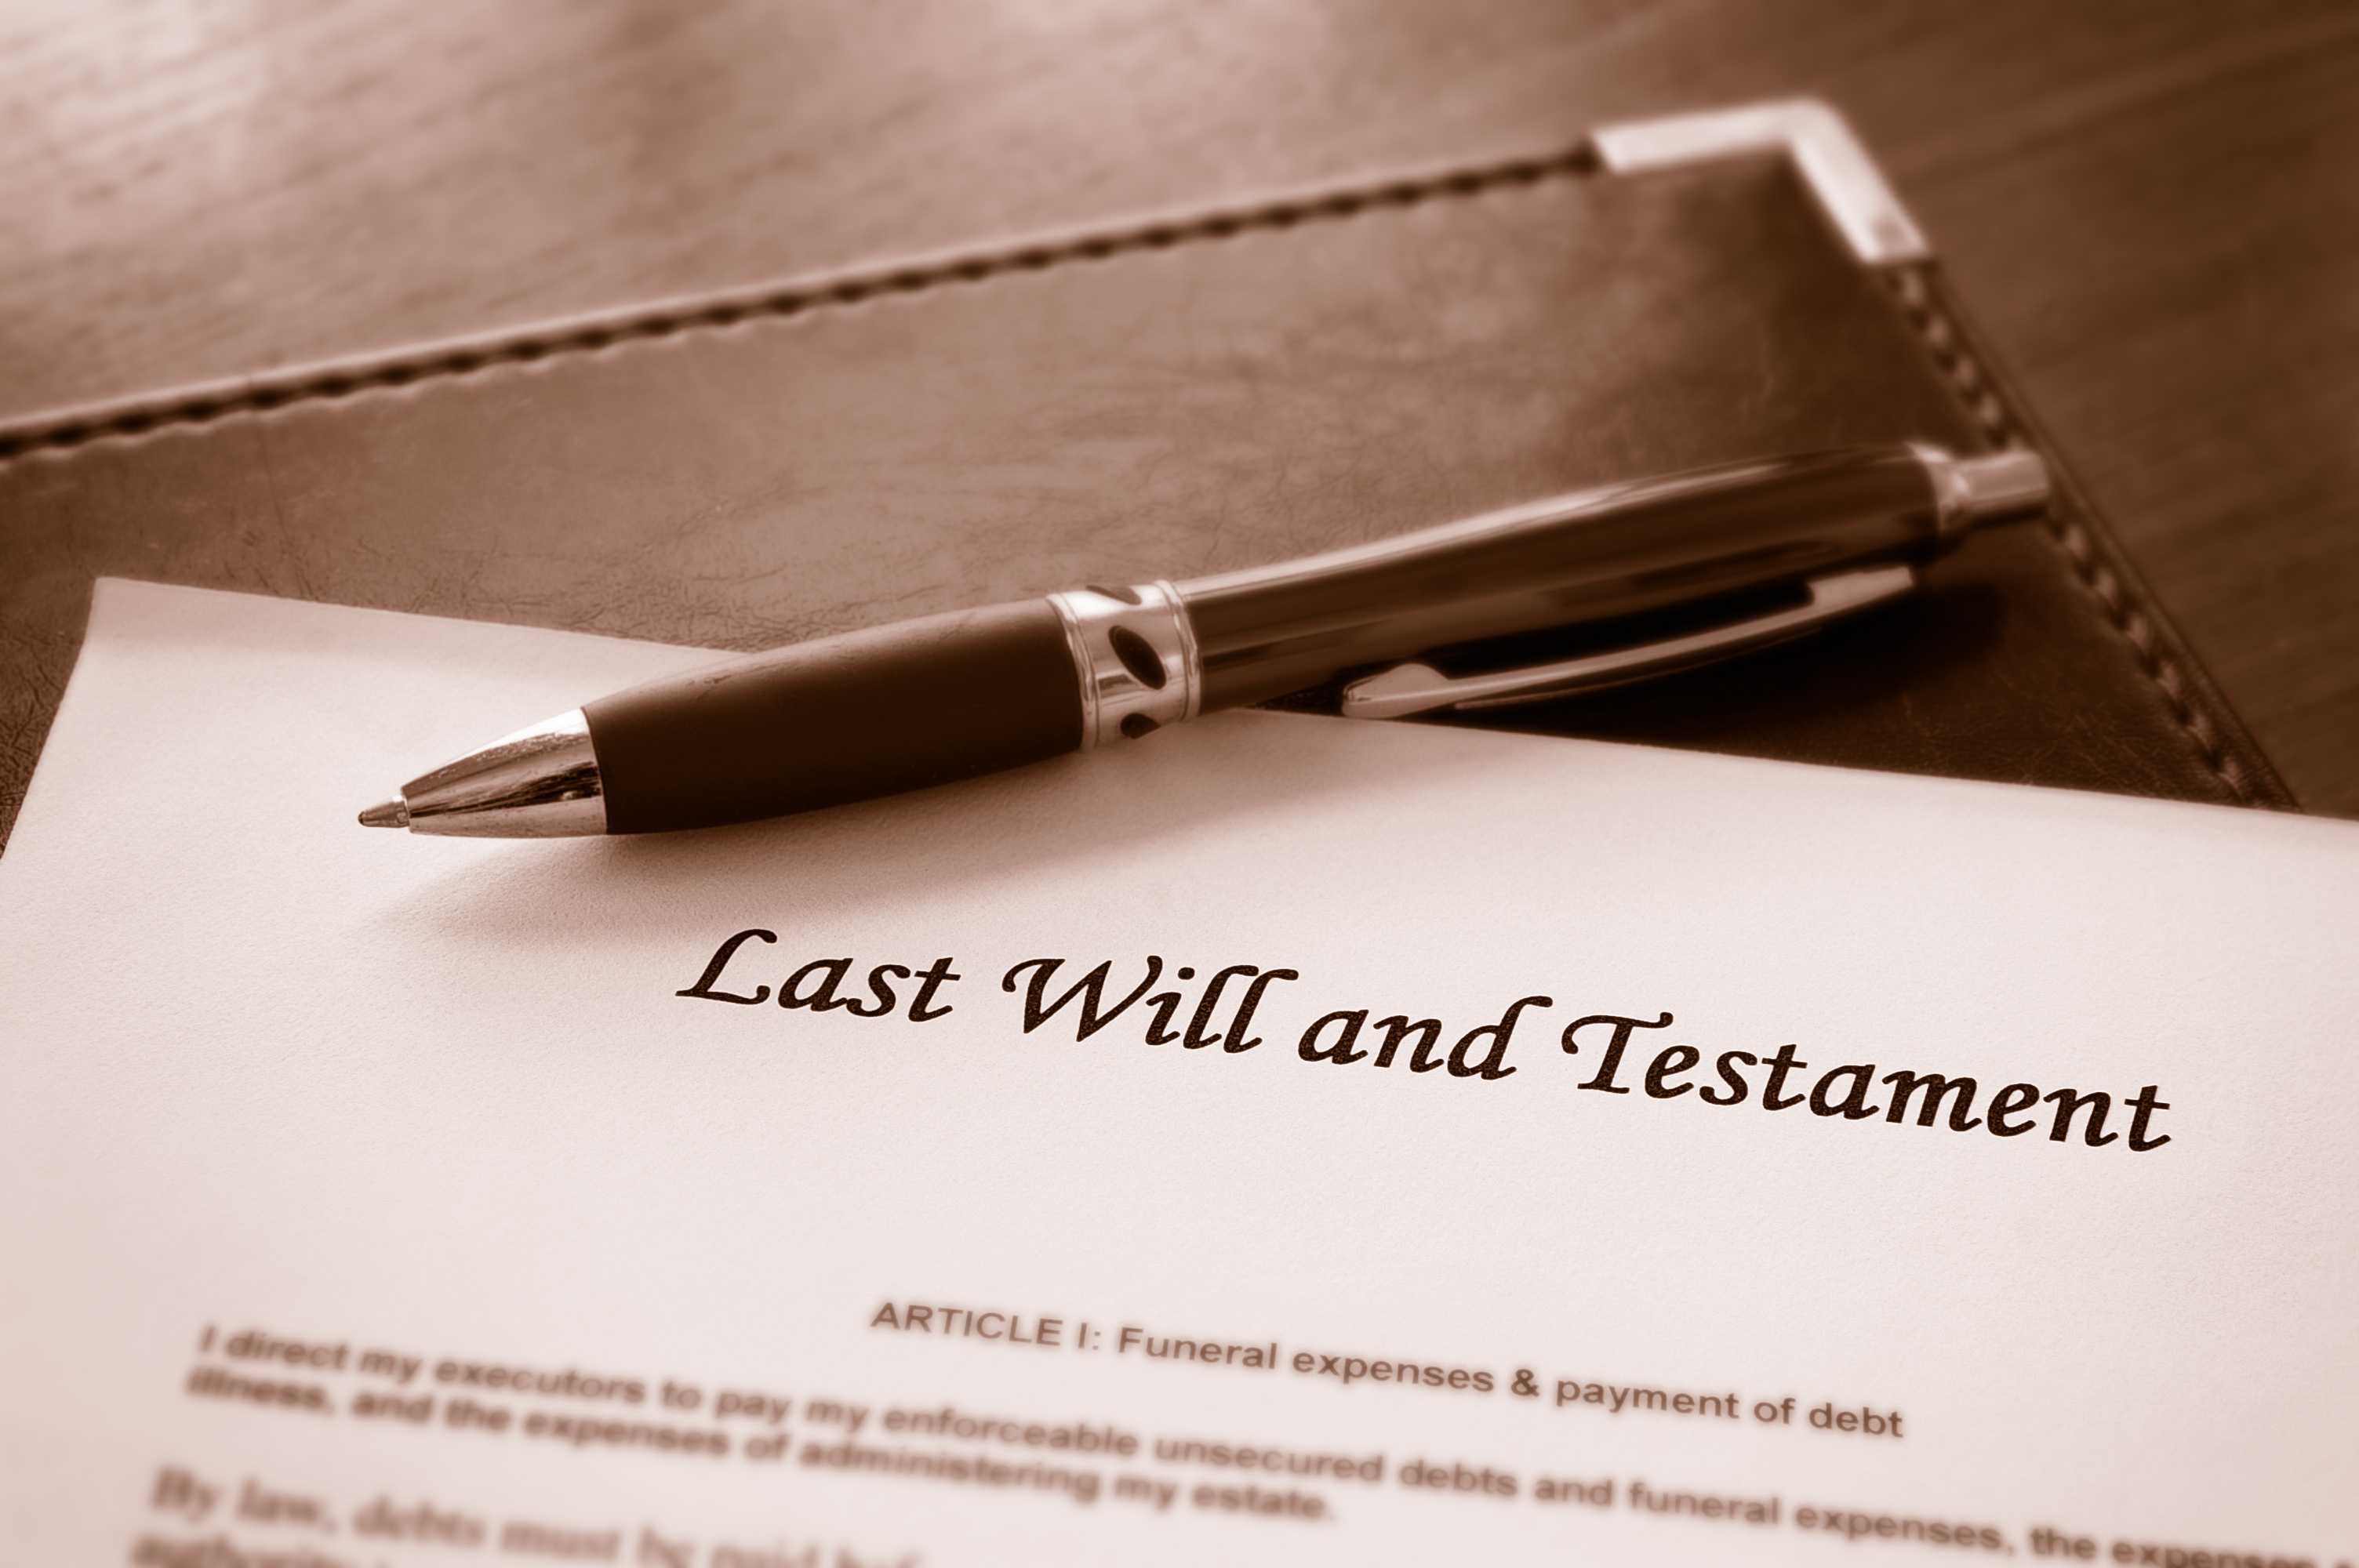 Un document contenant les dernières volontés et le testament de quelqu'un par écrit | Source : Shutterstock